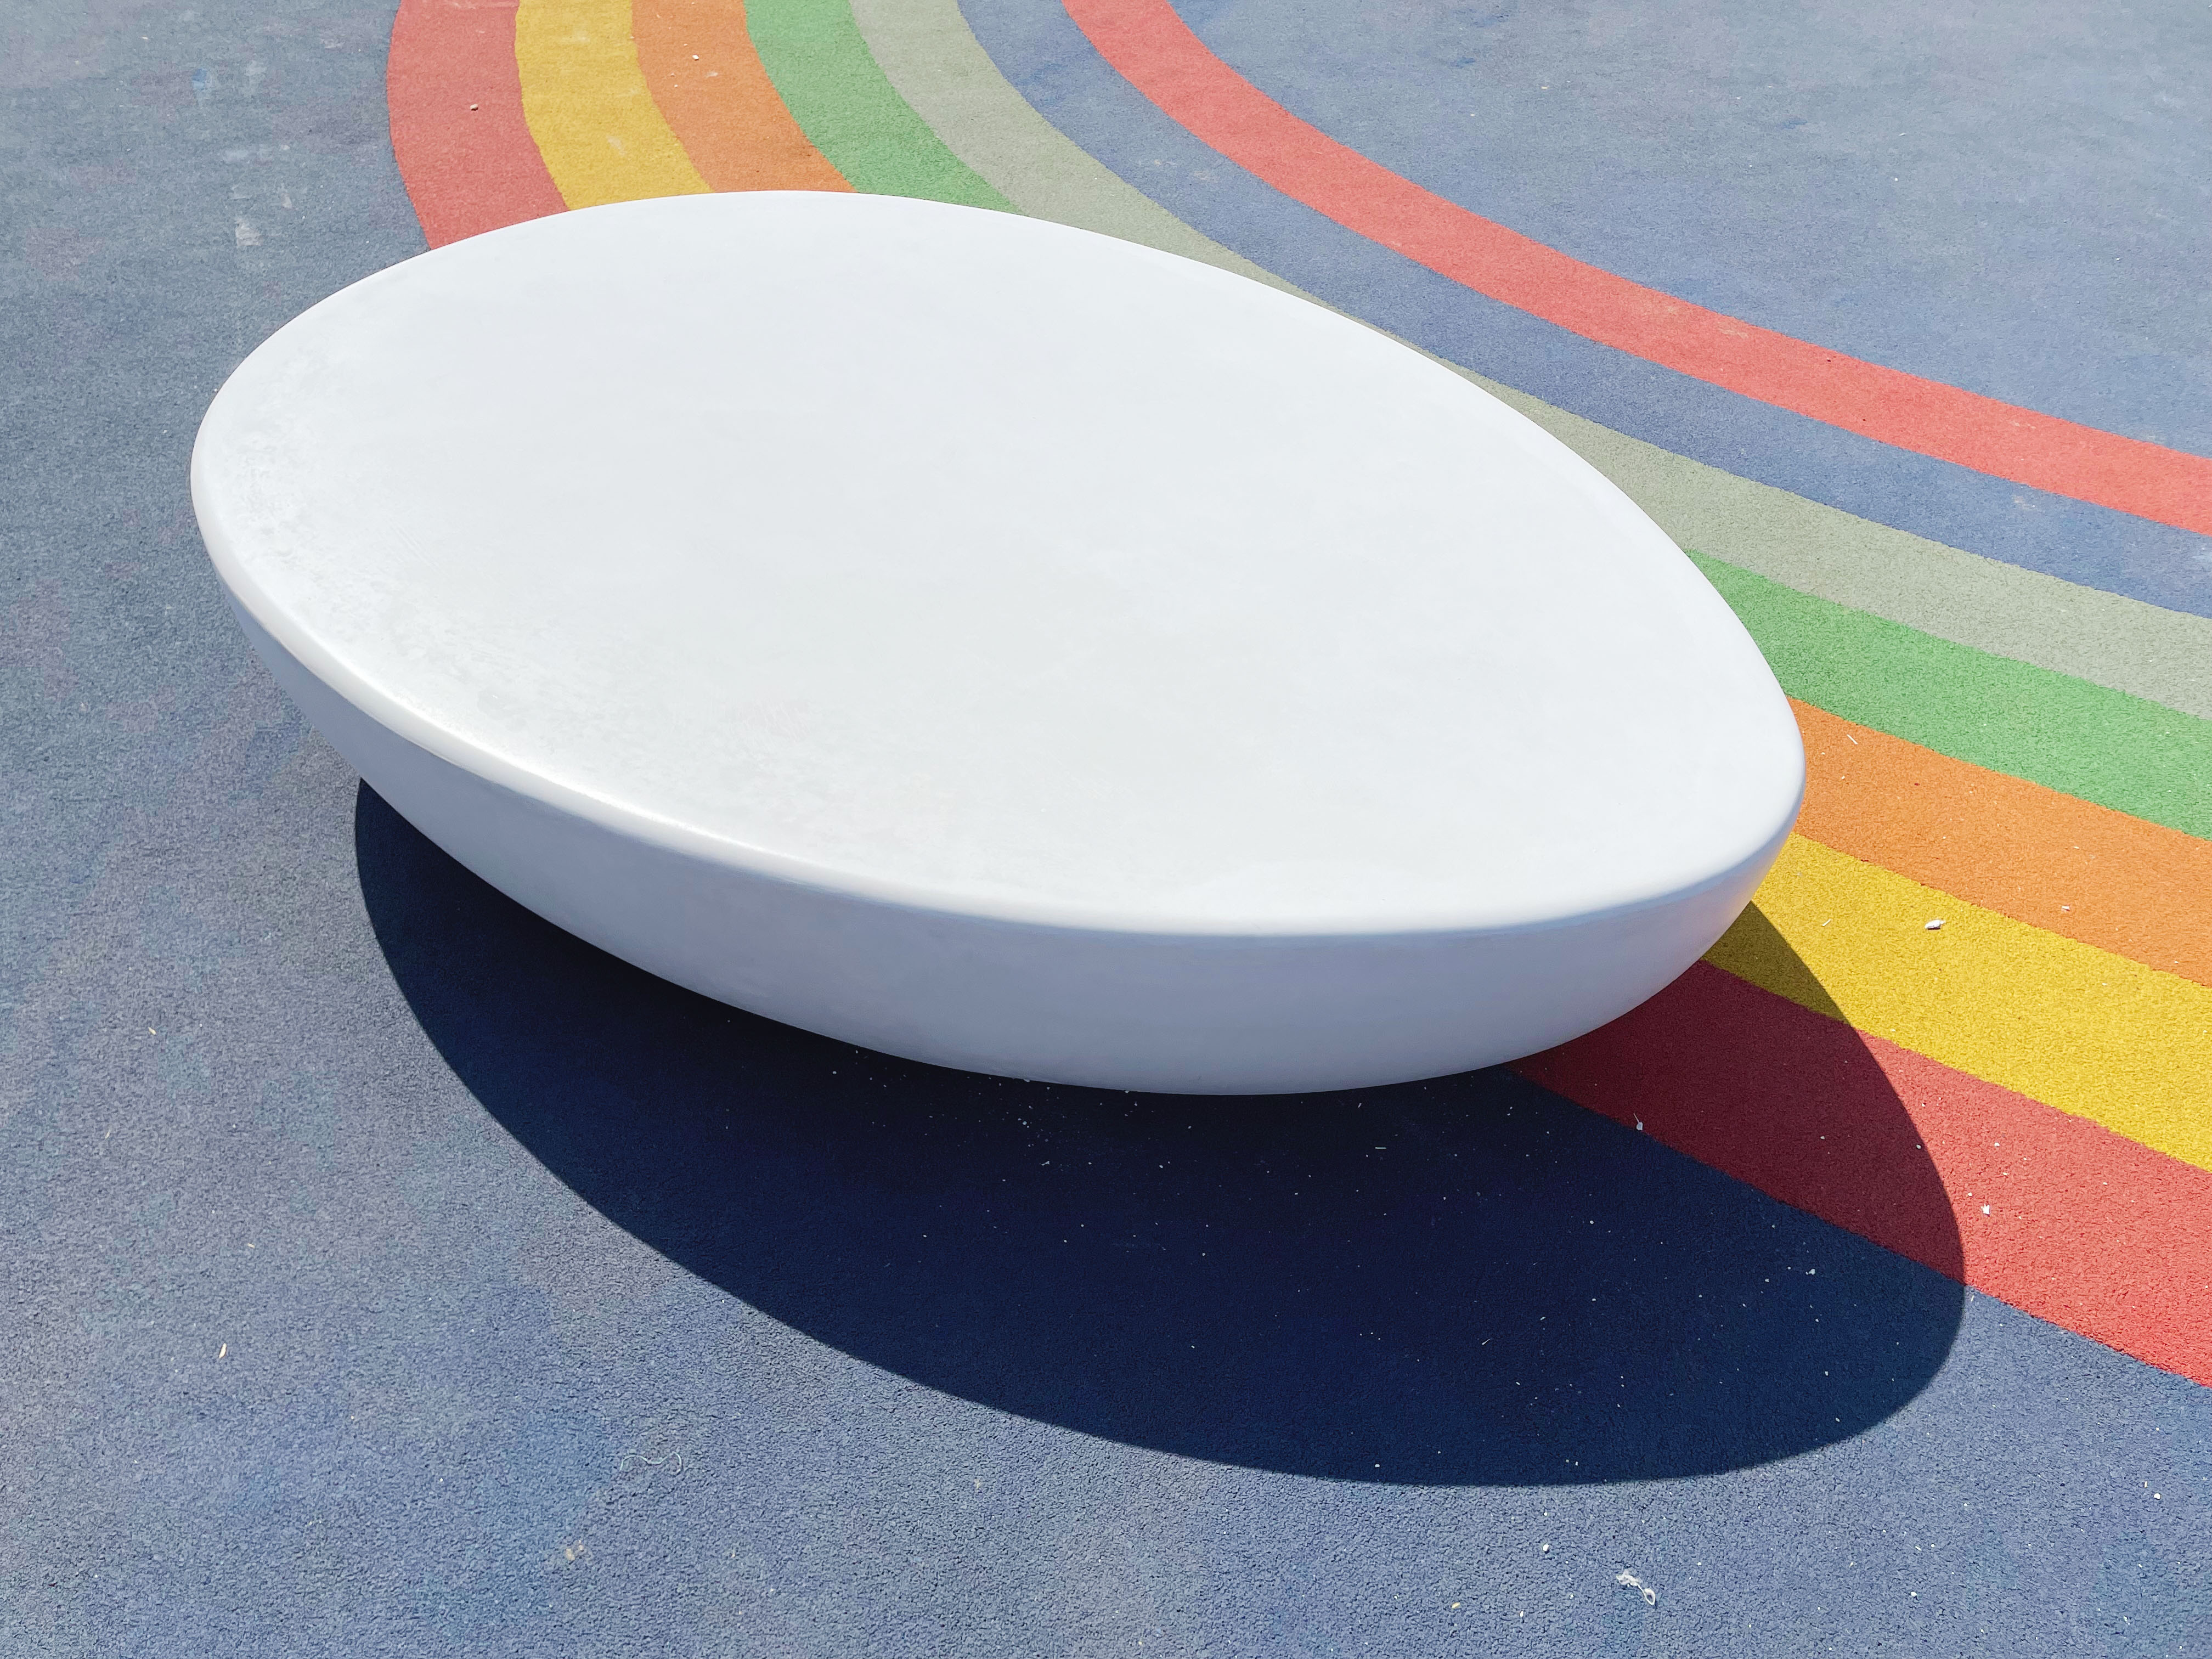 IREDON预制清水混凝土坐凳系列产品